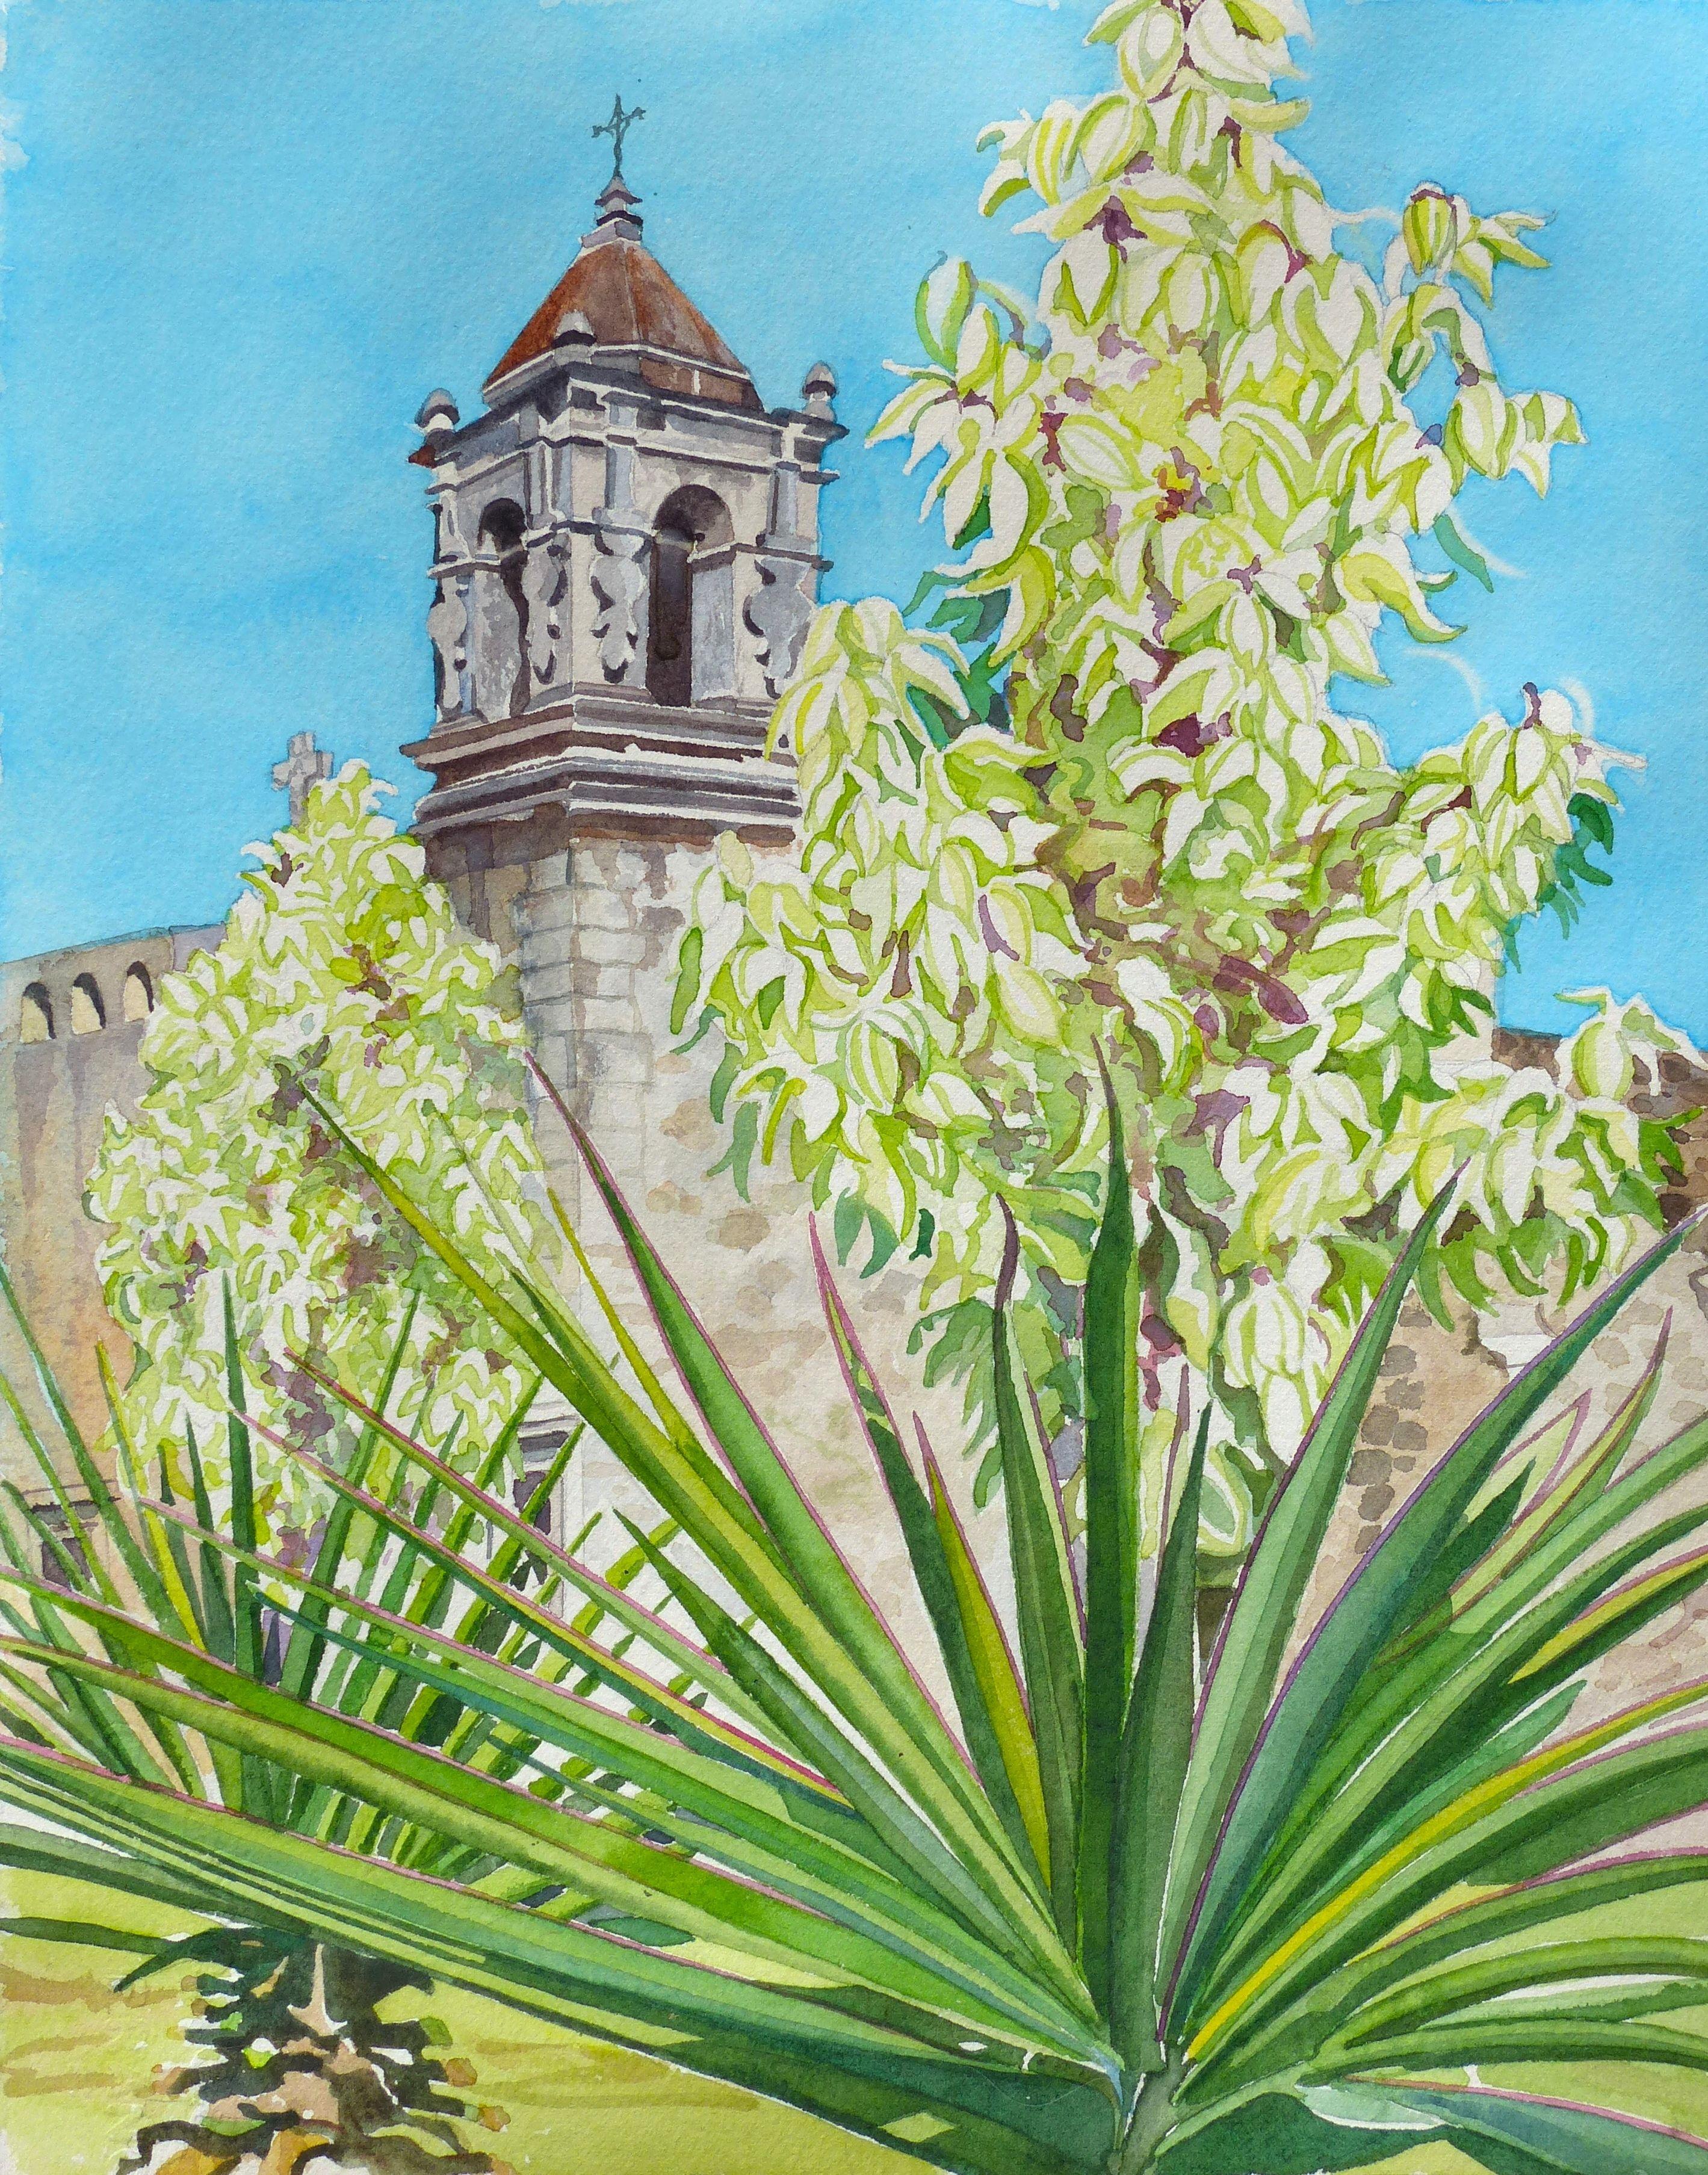 San Antonio Mission San Jose, peinture, aquarelle sur papier aquarelle - Art de Leslie White